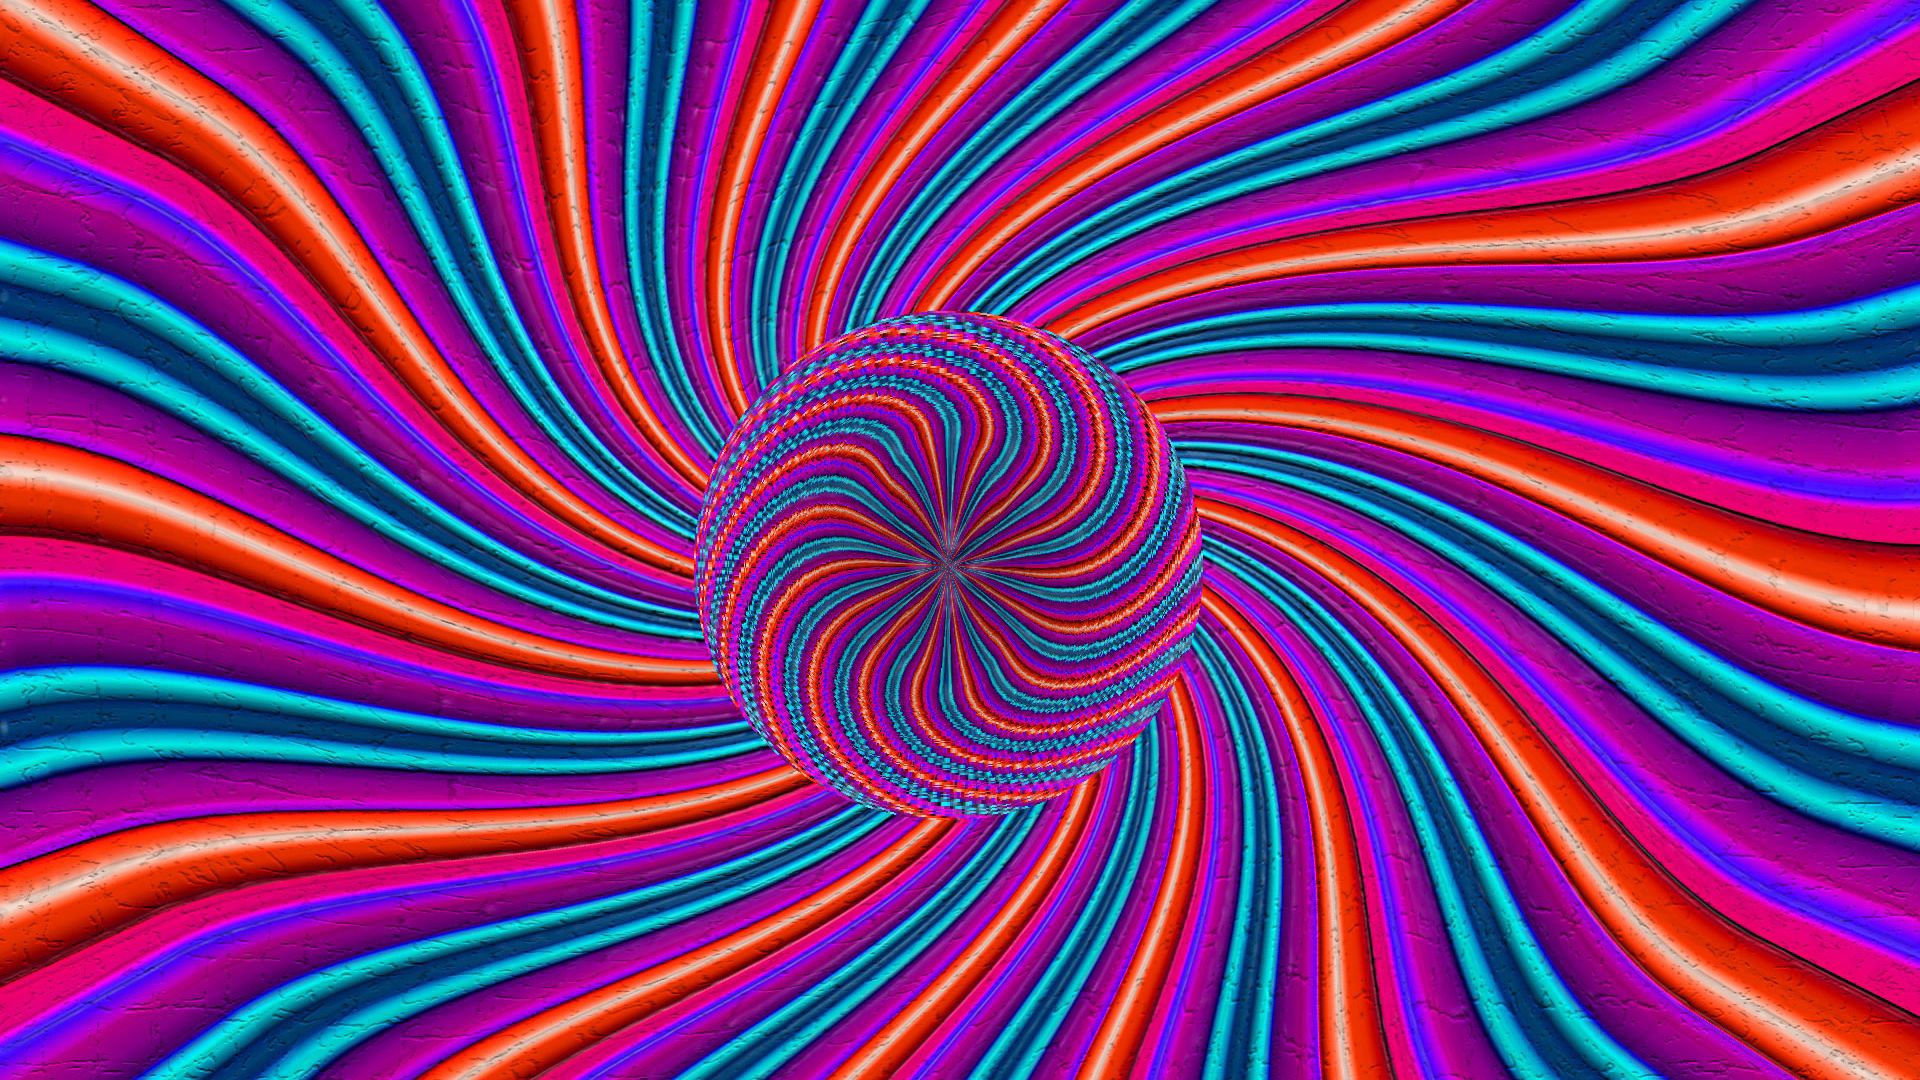 1920x1080 круги, линии, цвета, оптическая иллюзия обои full hd, hdtv, fhd, ...